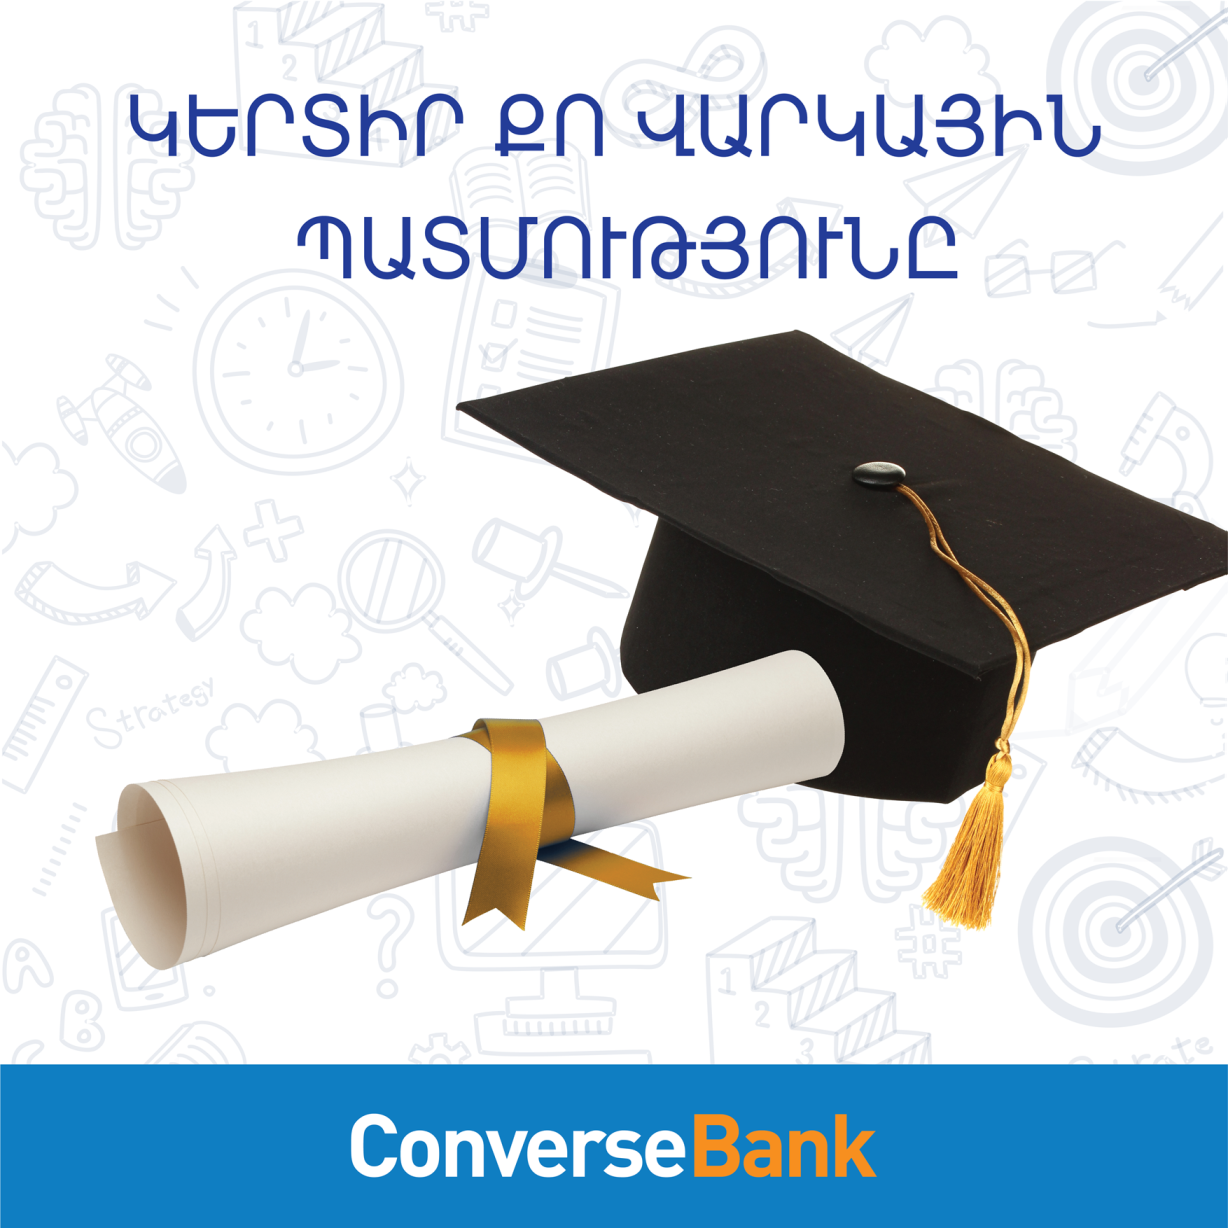 Конверс Банк: Новое предложение для молодежи